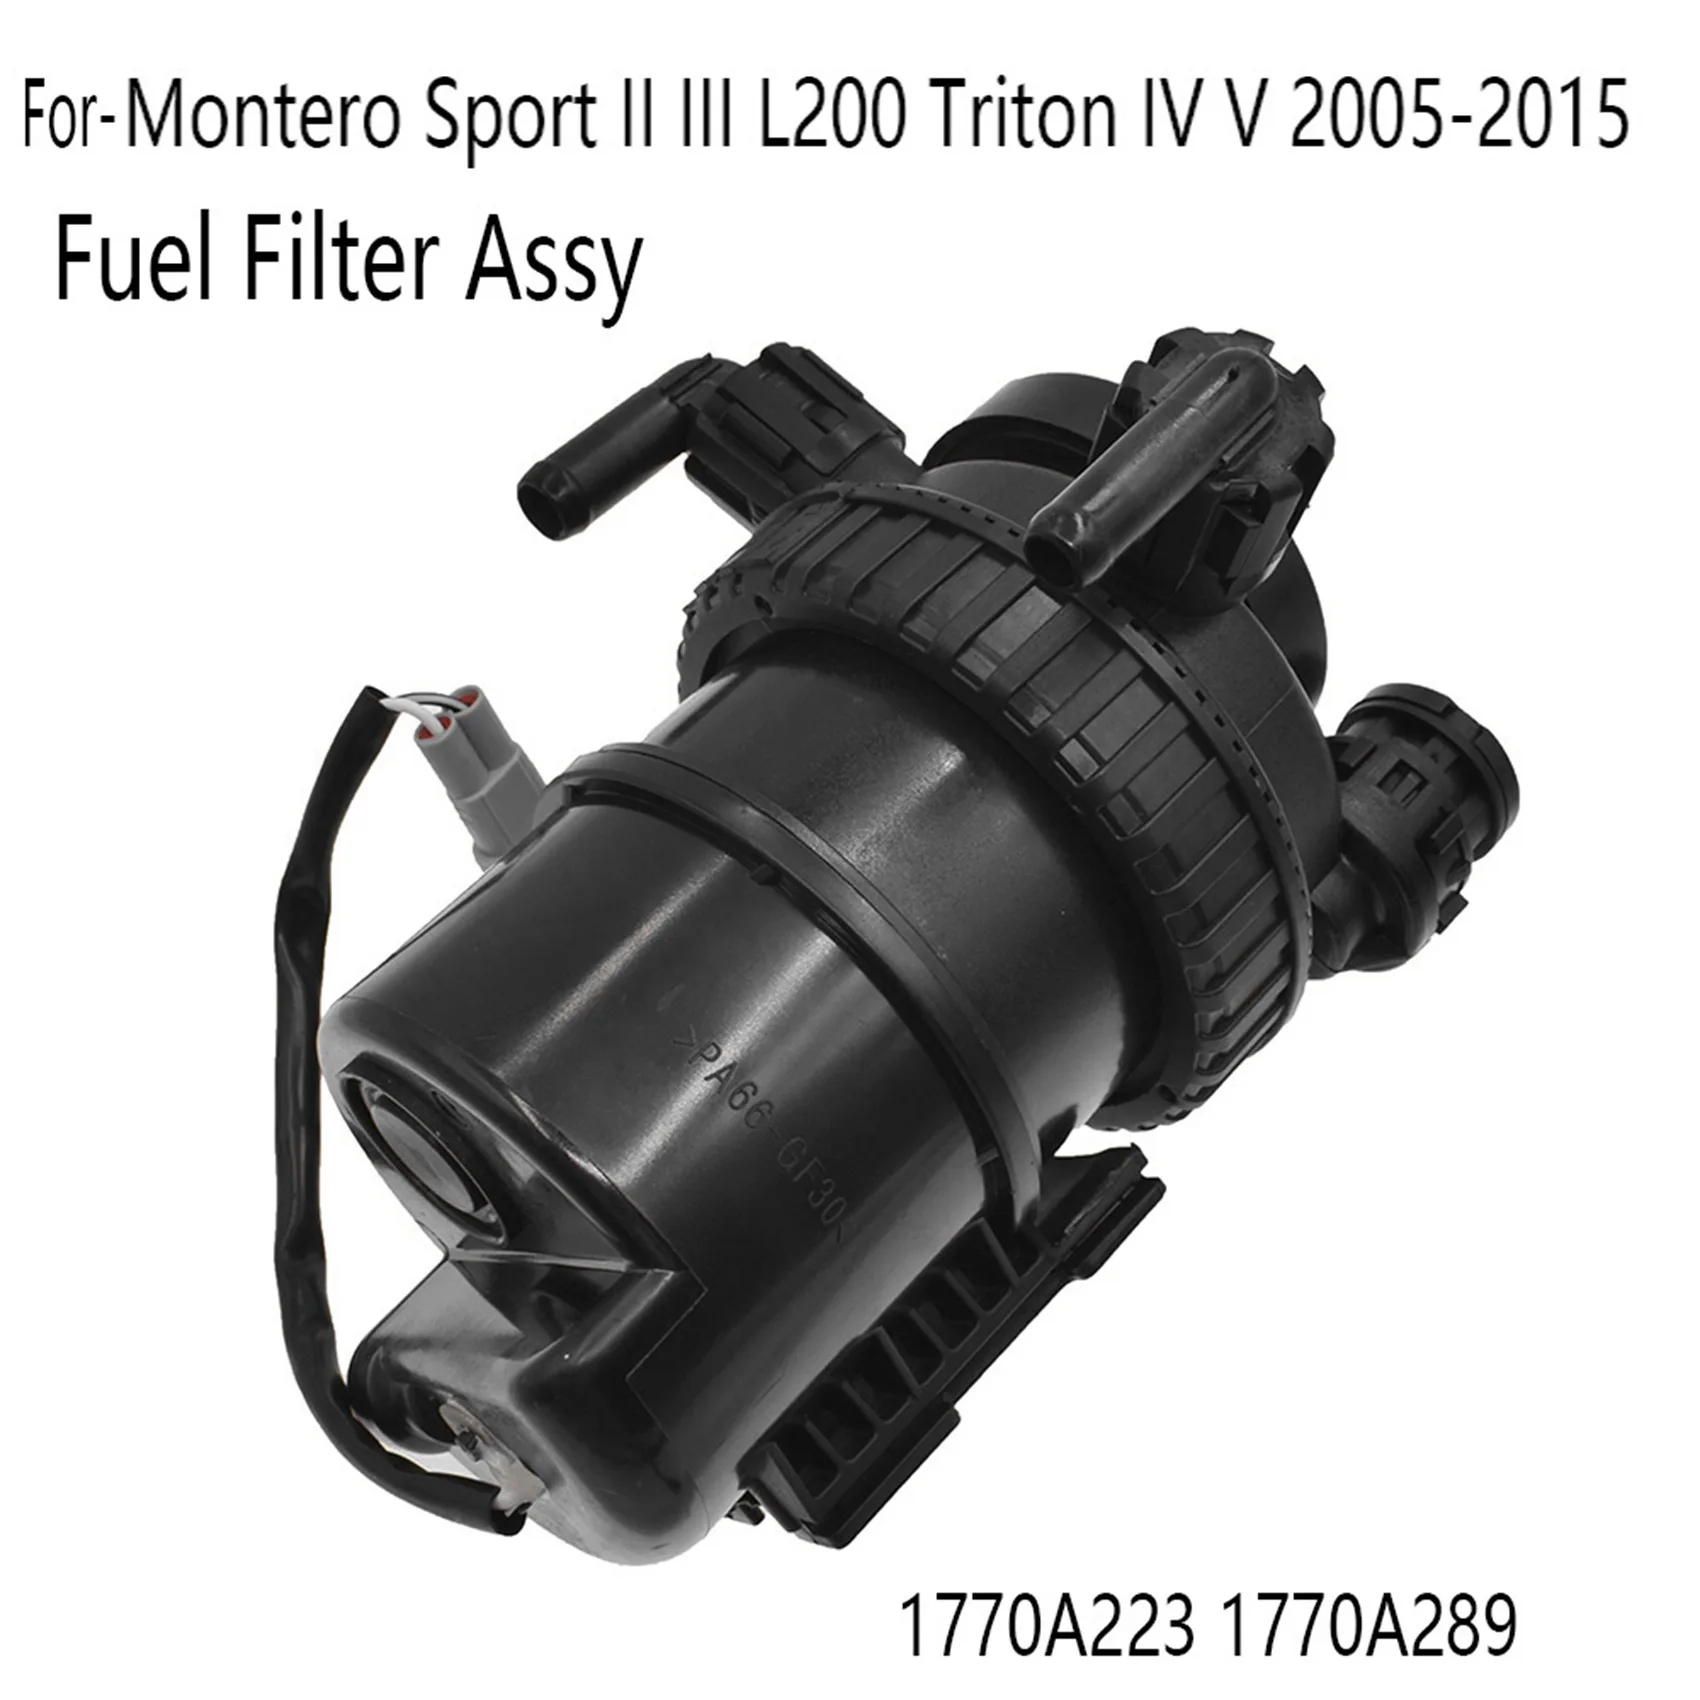 Топливный фильтр в сборе для Mitsubishi Pajero Montero Sport II III L200 Triton IV V 2005-2015 1770A223 1770A289 2